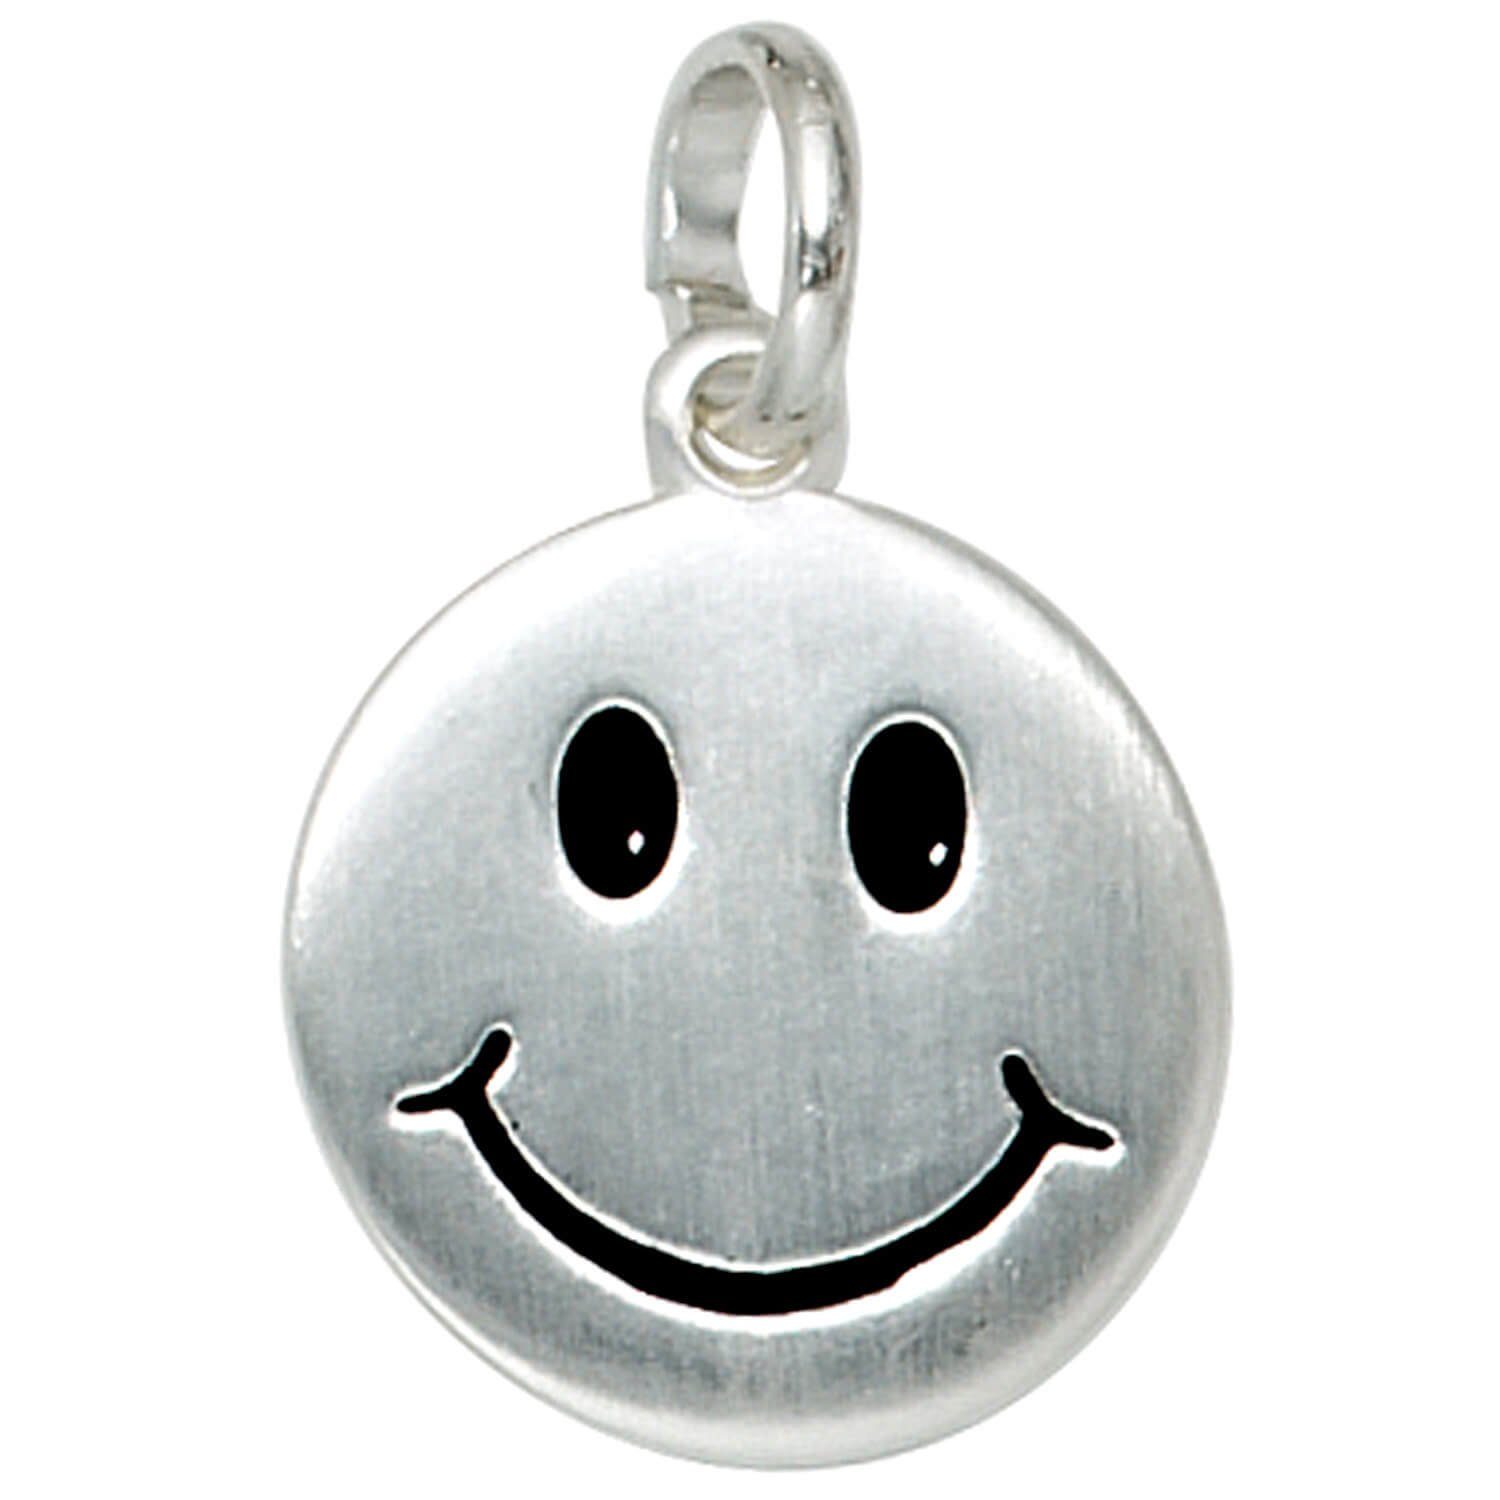 Schmuck aus Panzerkette Silberkette Smiley Schmuck-Set, Silber 925 42cm 1,7mm mit Halsschmuck, Krone